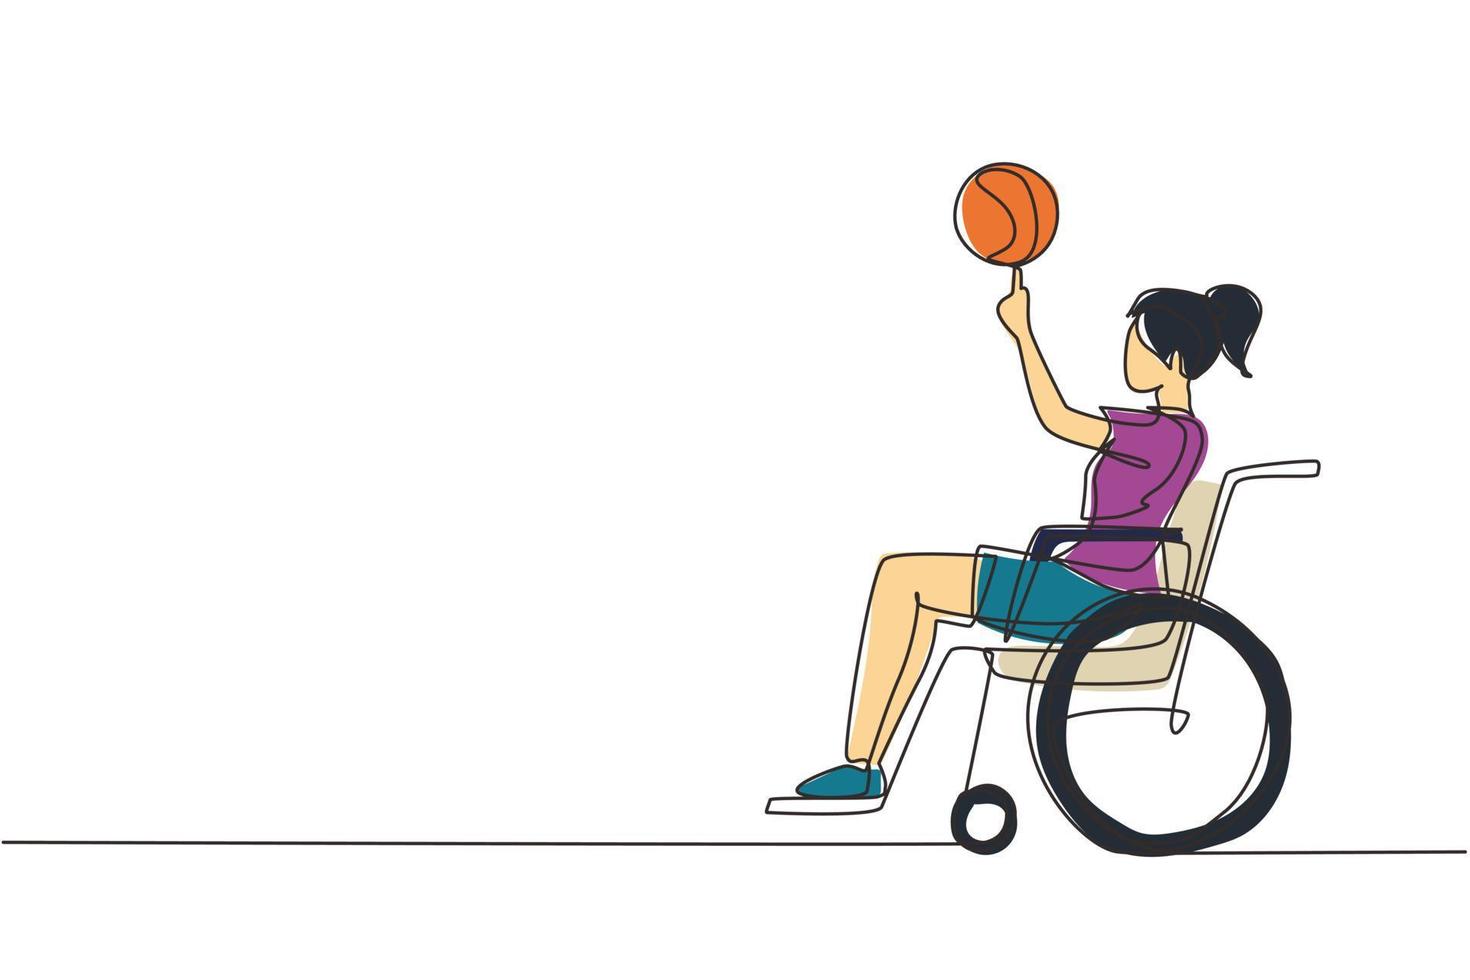 une ligne continue dessinant une jolie fille en fauteuil roulant joue au basket-ball. personne handicapée fait tourner le basket-ball sur son doigt. exercice pour les personnes handicapées. illustration vectorielle de dessin à une seule ligne vecteur